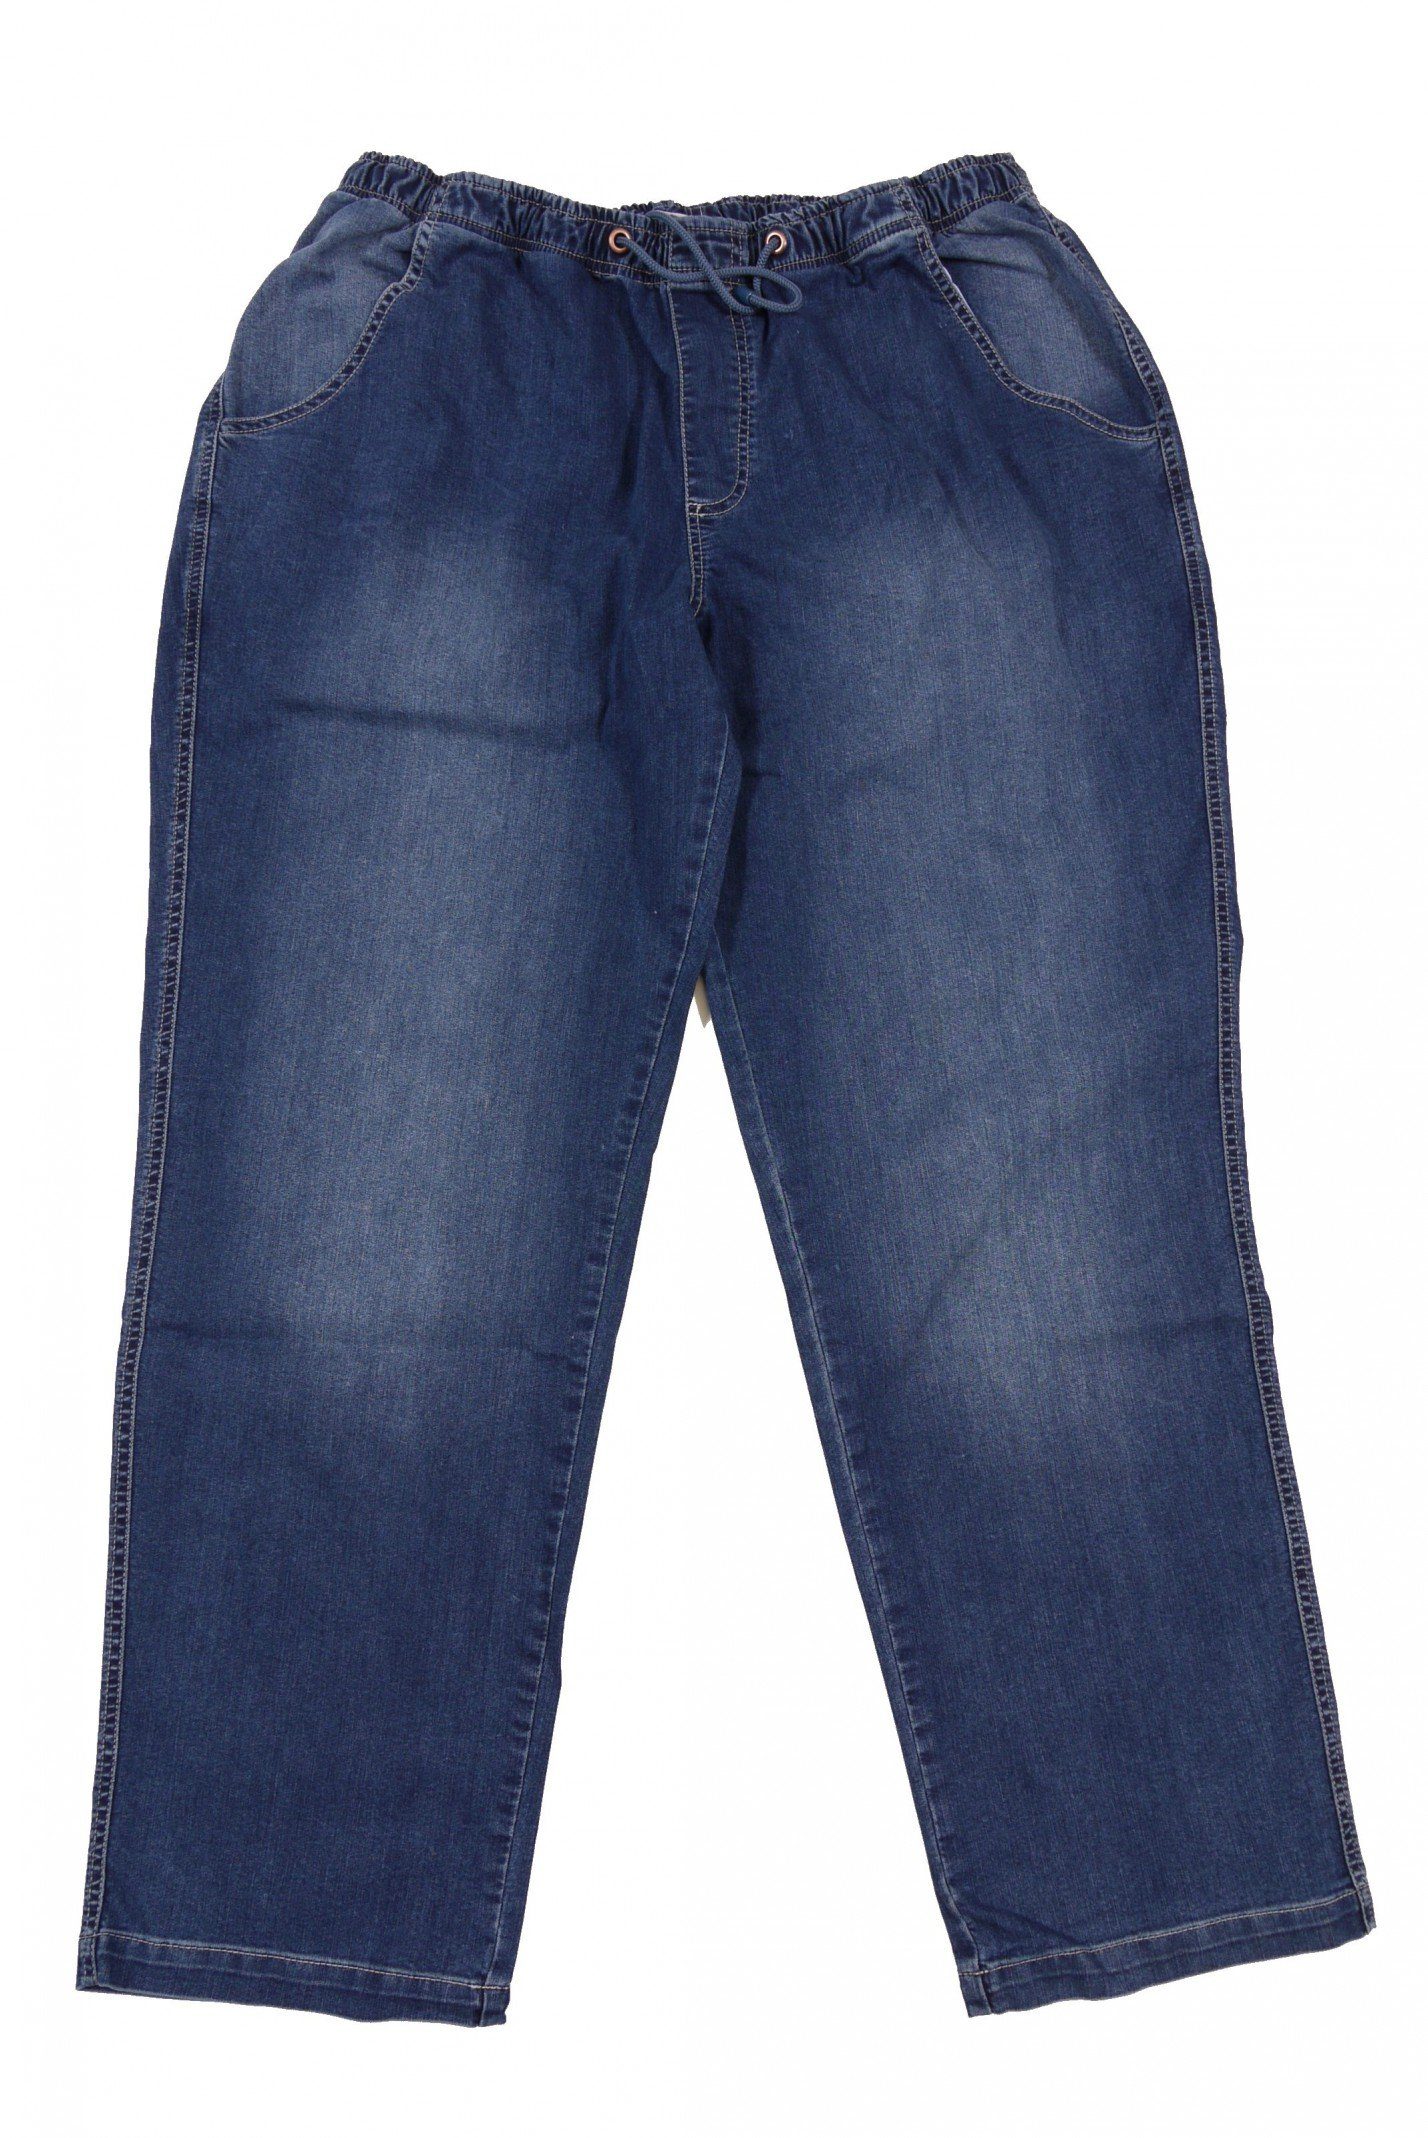 ABRAXAS Schlupfjeans Jeans mit Gummibund in Übergrößen bis 10XL, stonewash